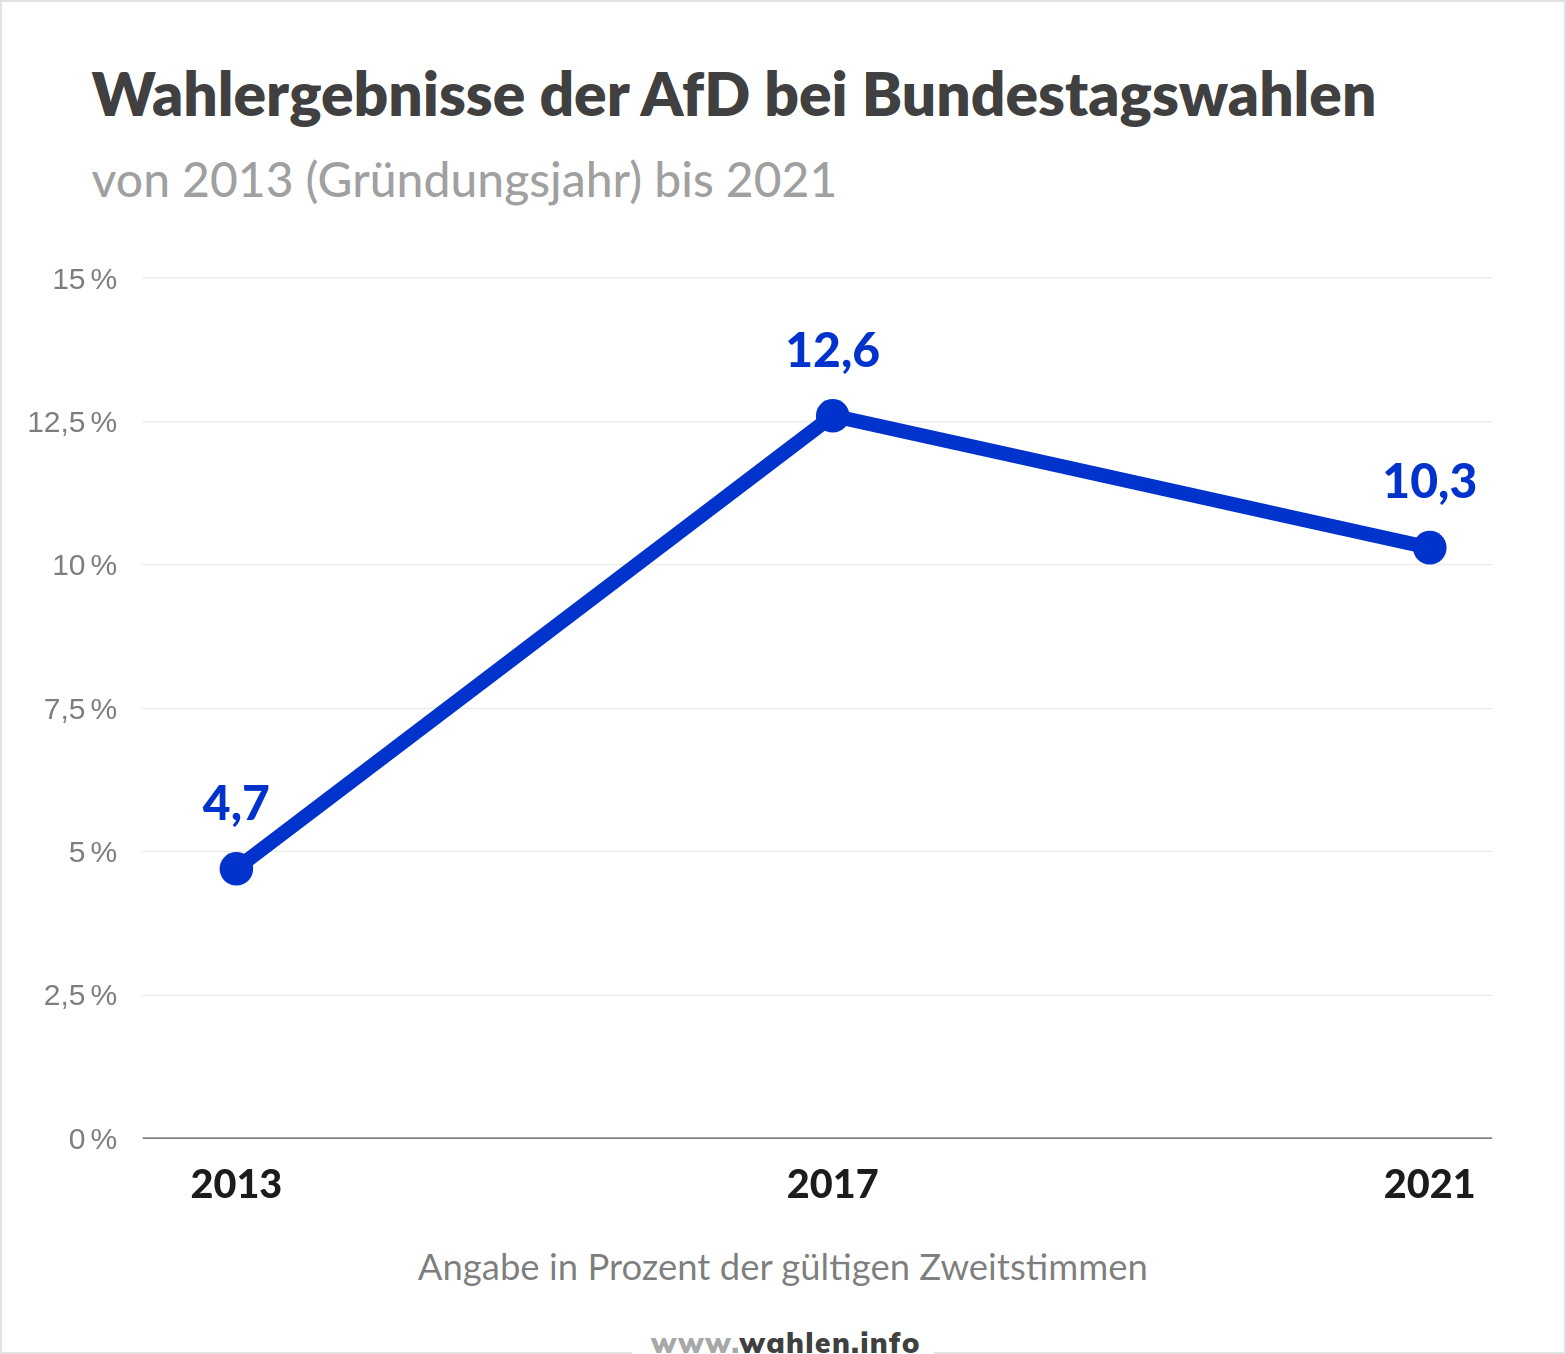 Wahlergebnisse der AfD (Alternative für Deutschland) bei Bundestagswahlen